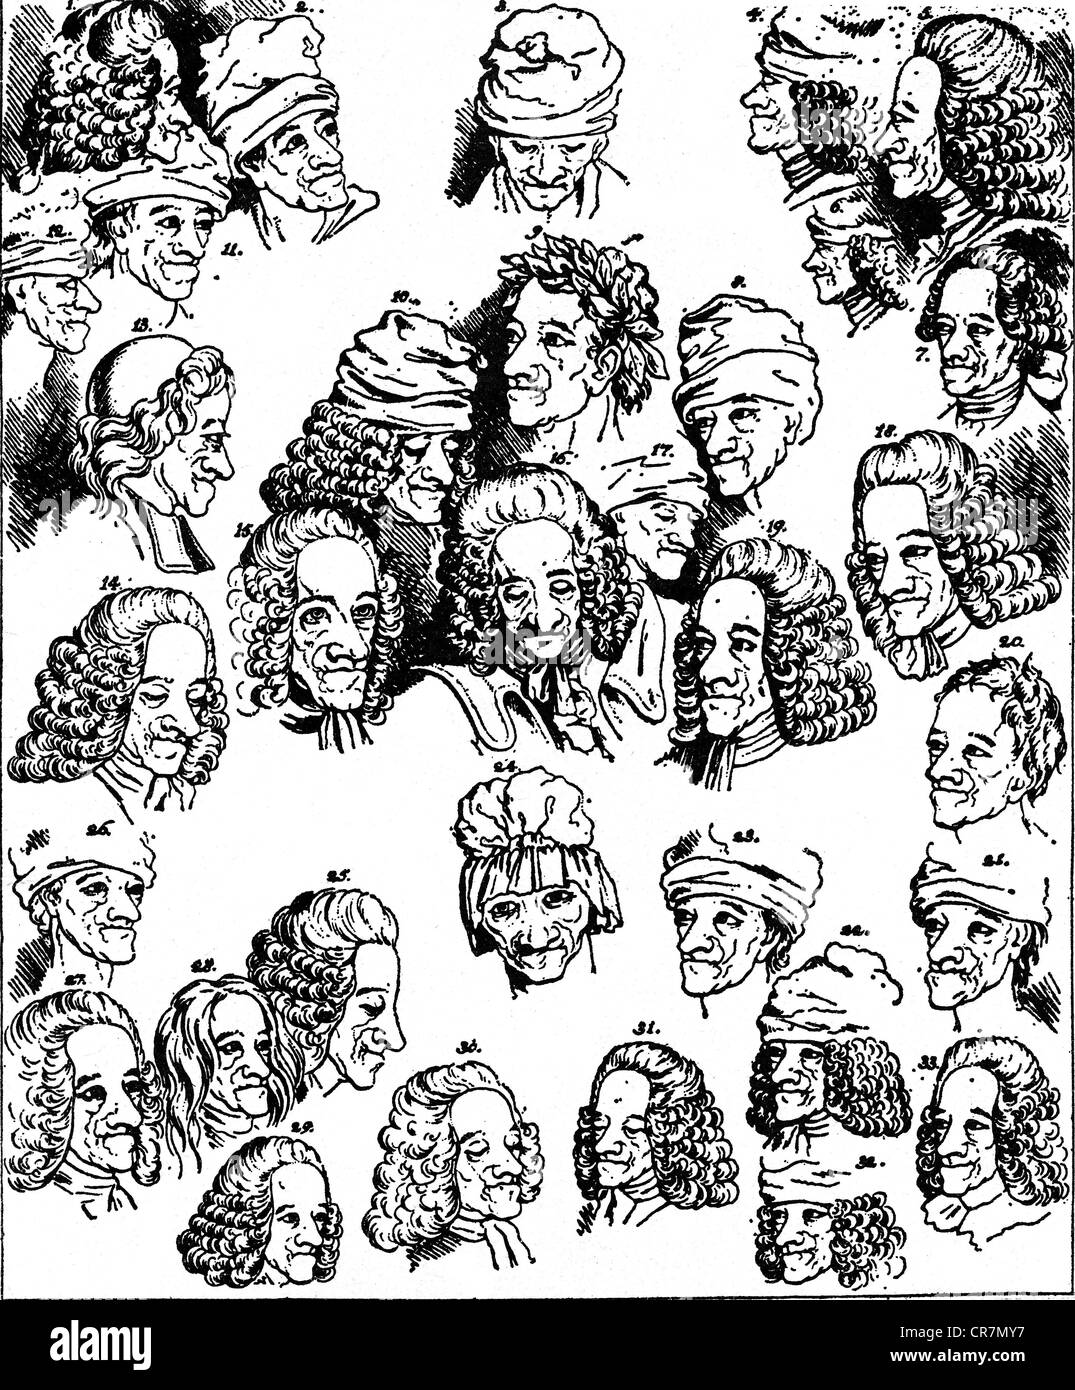 Voltaire, (François Arouet), 21.11.1694 - 30.5.1778, le philosophe français, "les nombreux visages de Voltaire", après les dessins de M. Hubert, gravure sur cuivre, von Johann Heinrich Lips (1758 - 1817), 18e / 19e siècle, l'artiste a le droit d'auteur , de ne pas être effacé Banque D'Images